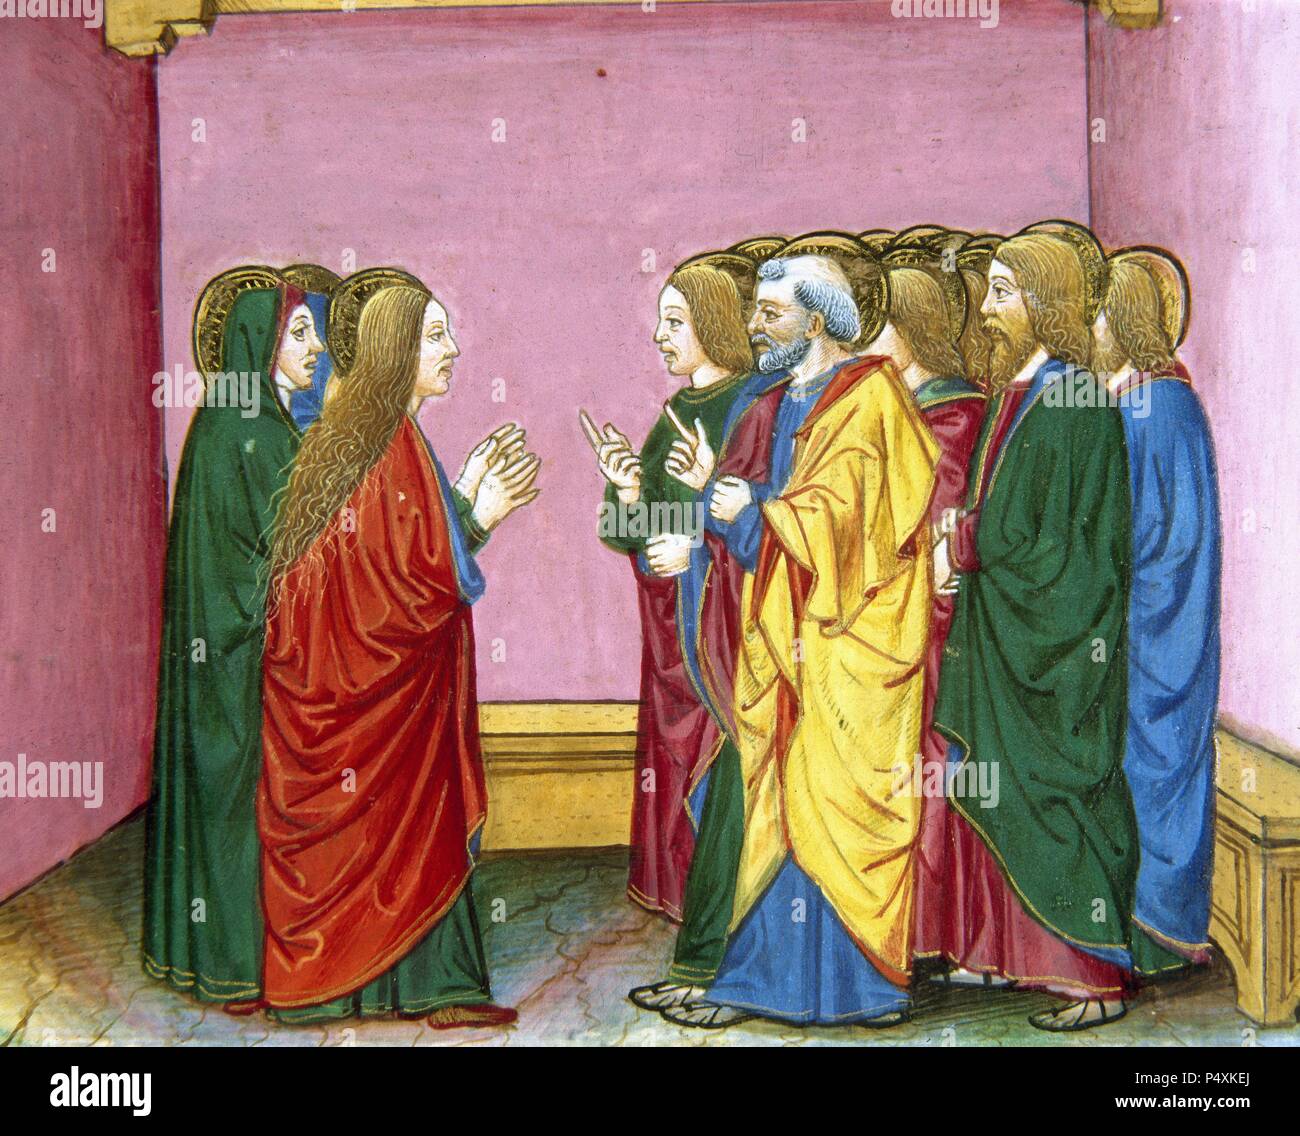 Die drei Marien verkünden die Jünger, dass Jesus auferstanden ist. Codex von Predis (1476). Königliche Bibliothek. Turin. Italien. Stockfoto